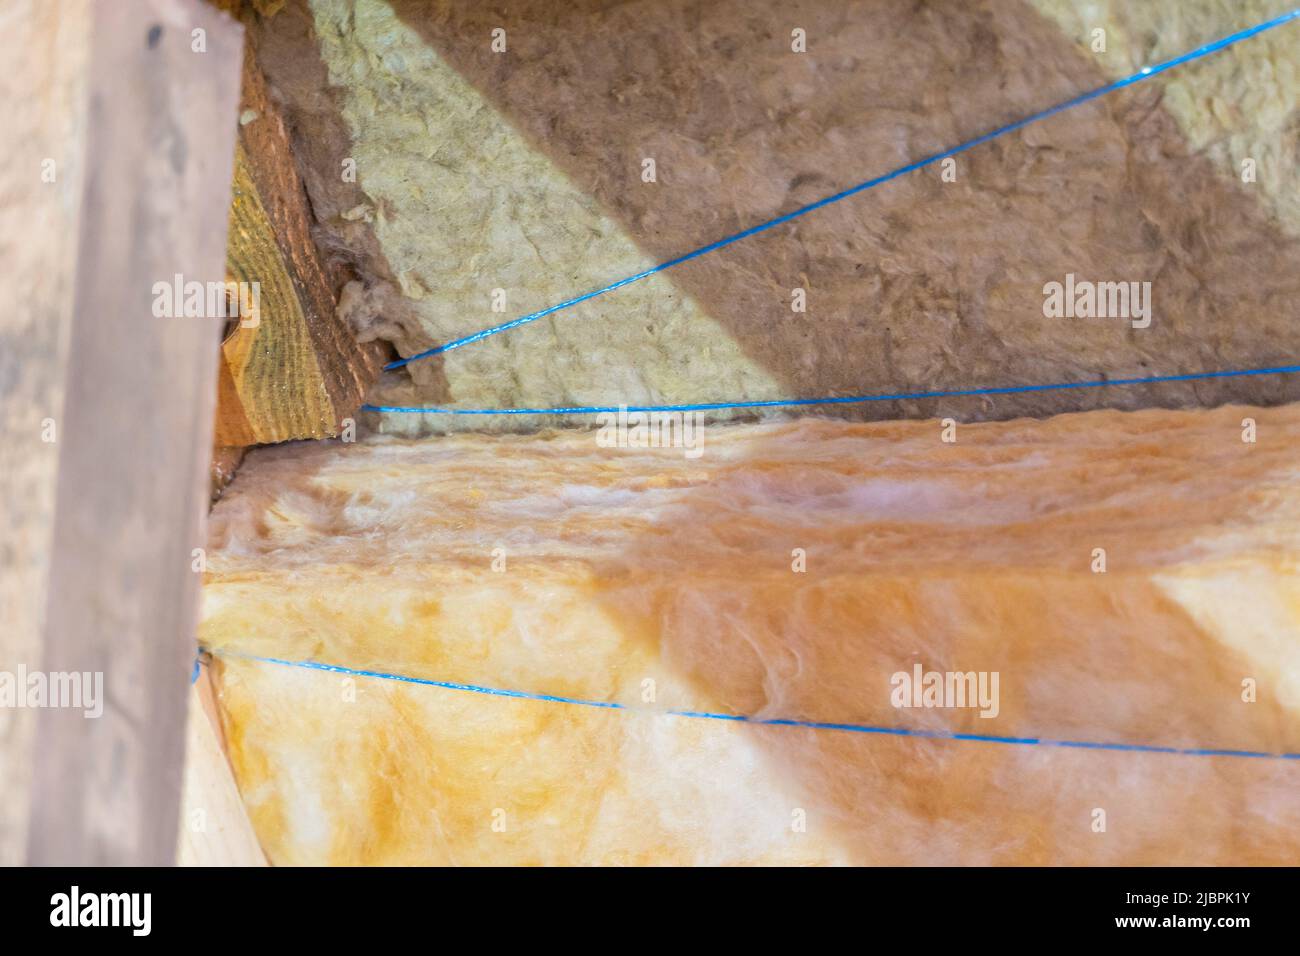 Isolamento del tetto in due strati di lana minerale e di lana di vetro si sovrappongono Foto Stock